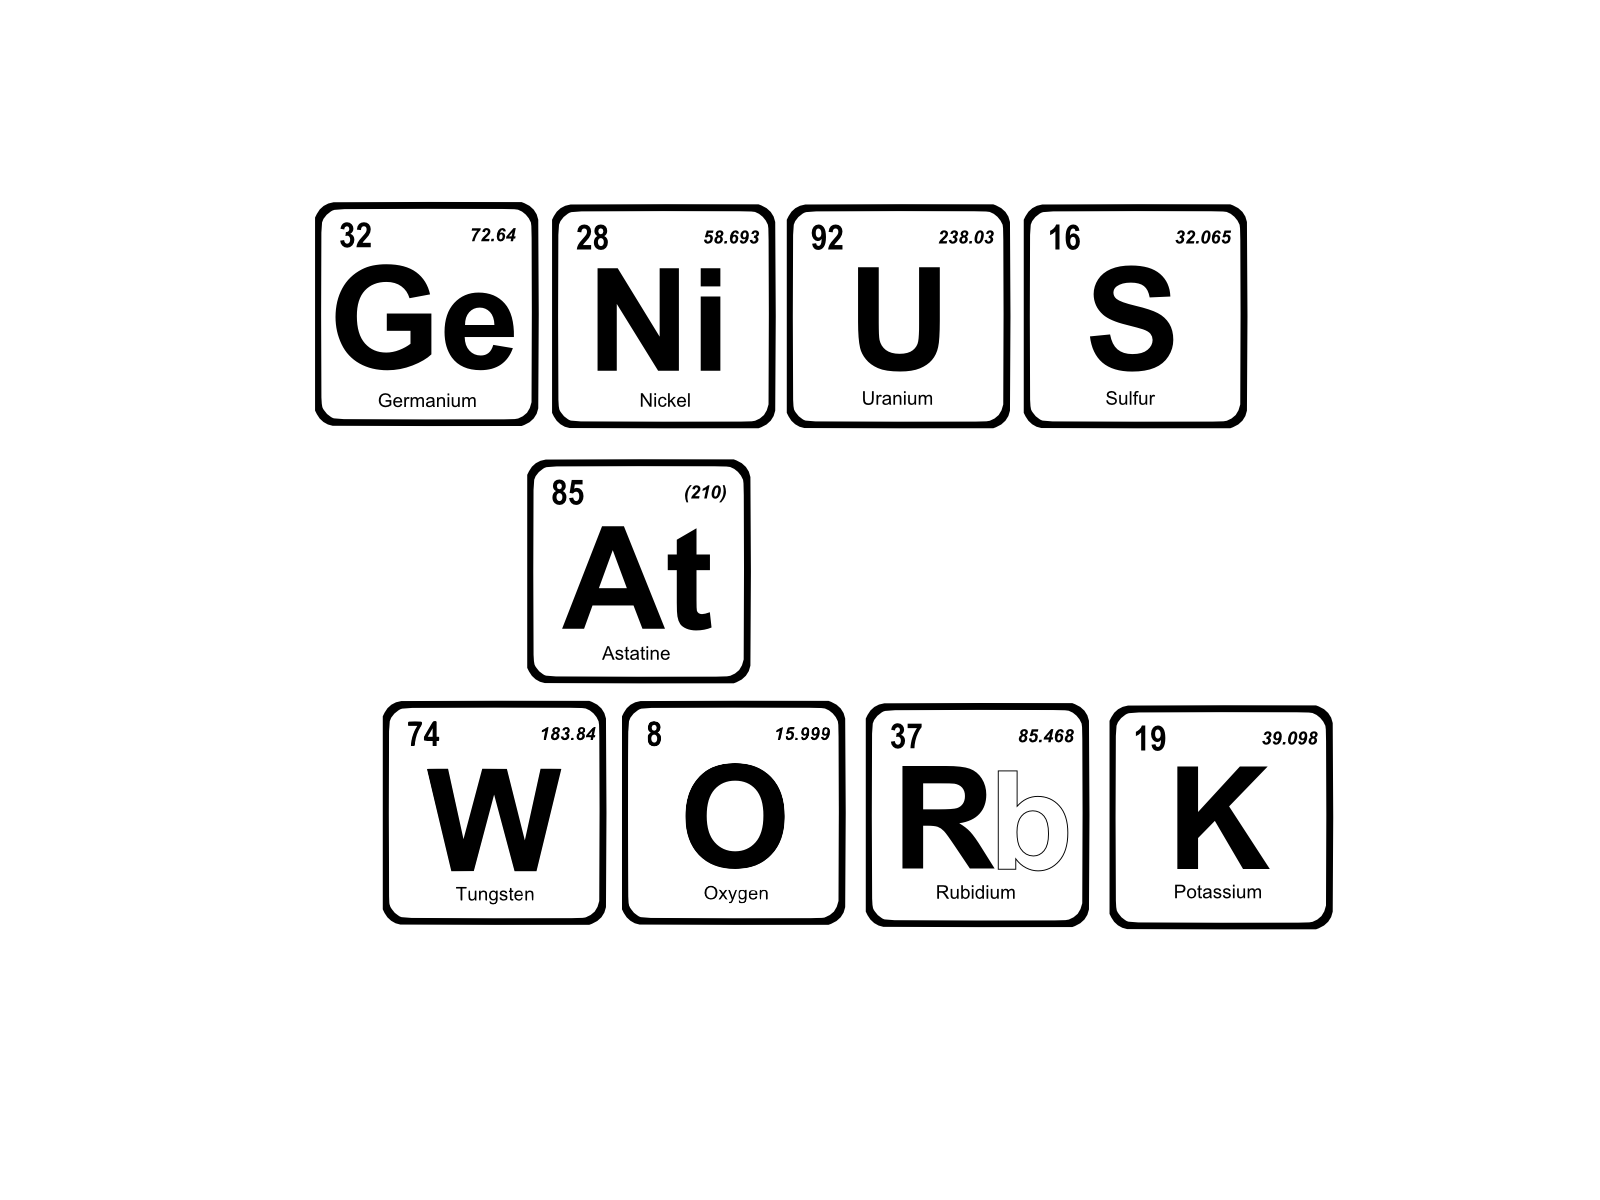 genius_at_work_by_nood2708-d49n0km.png